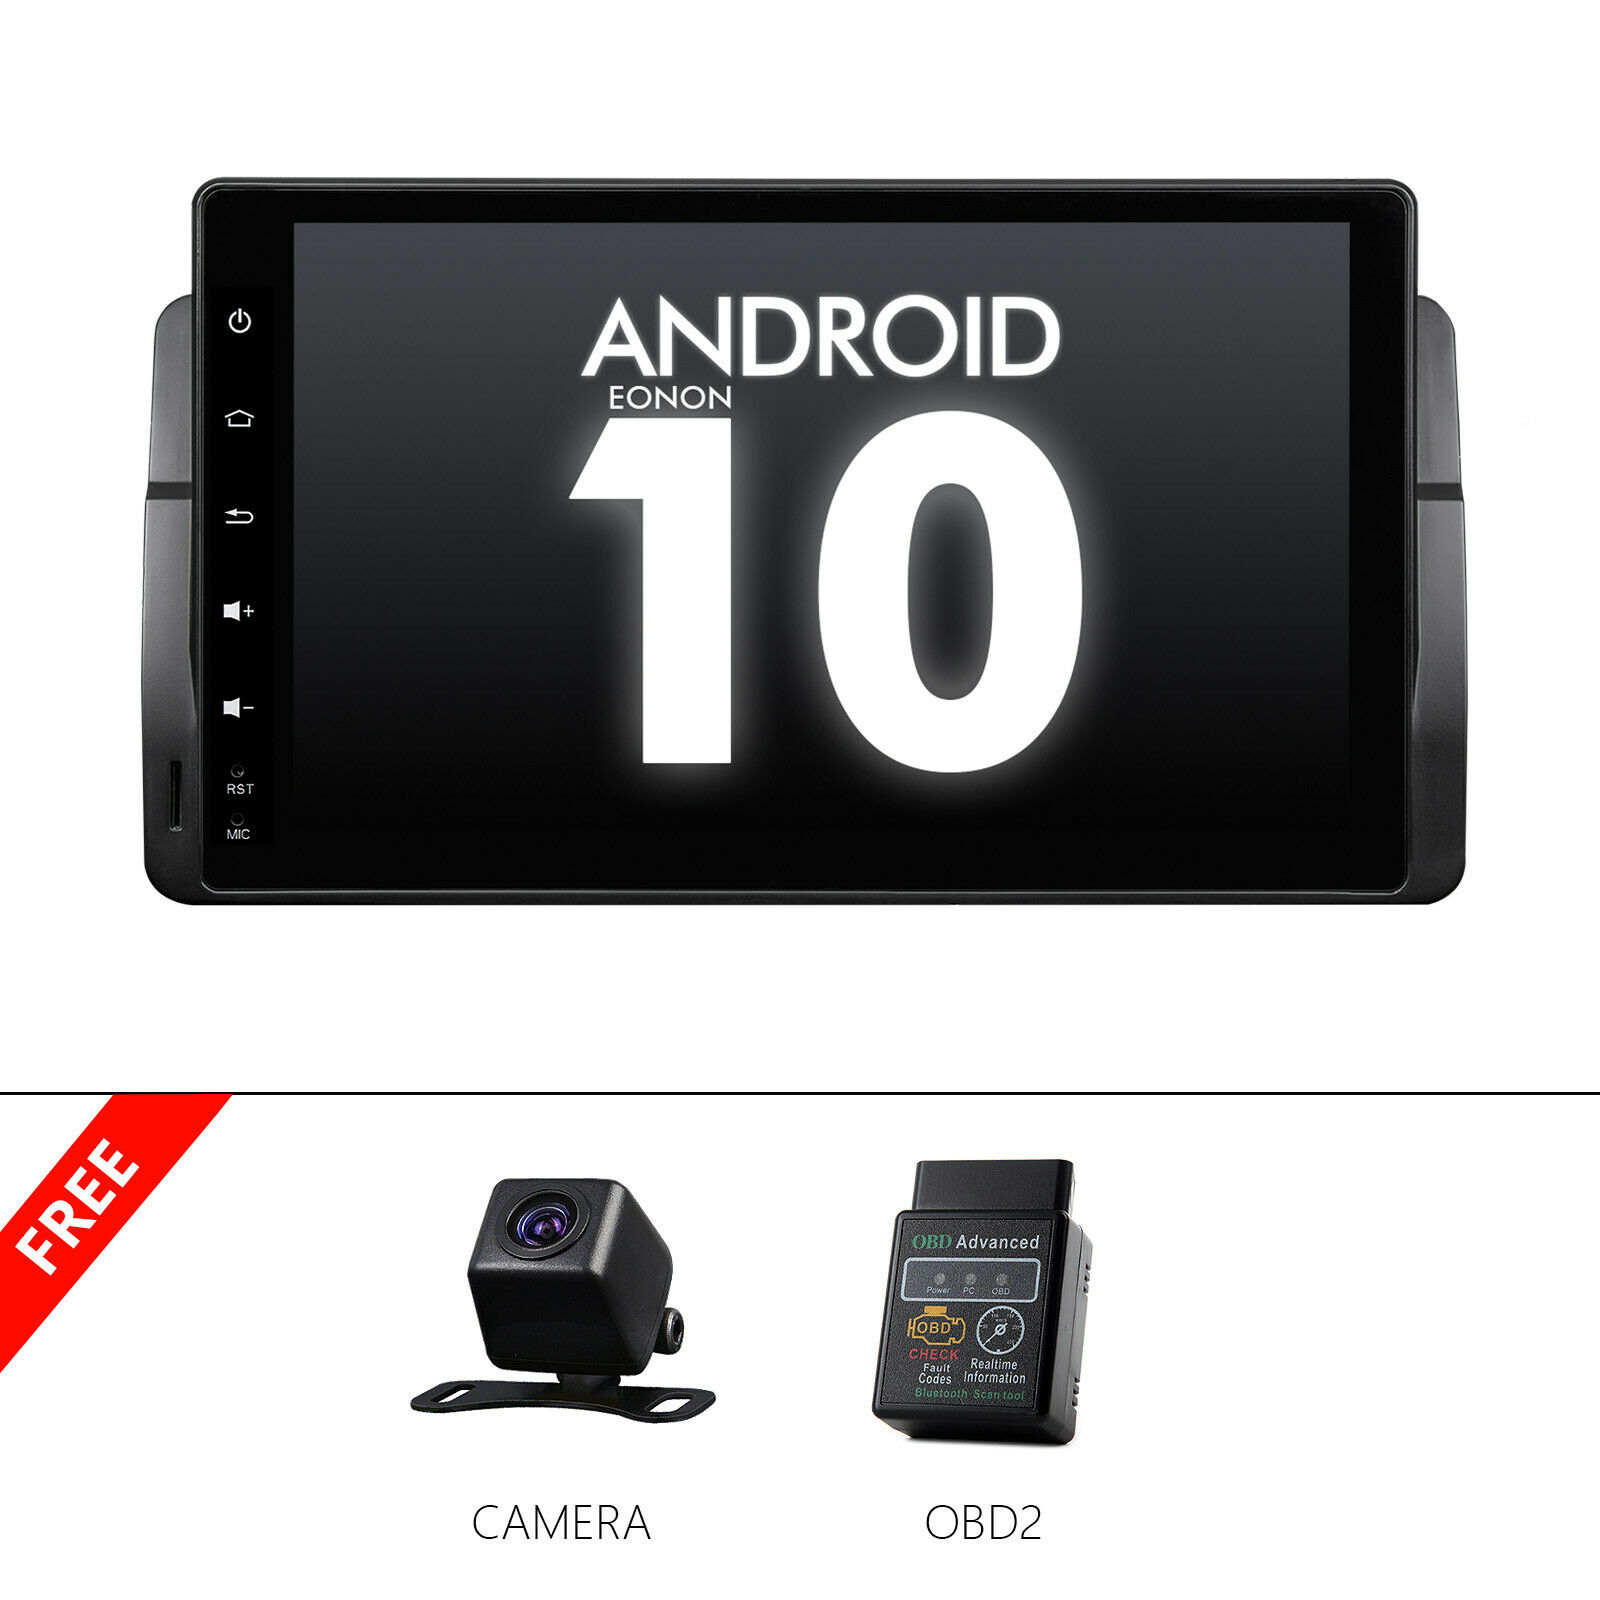 Obd+cam+for Bmw E46 M3 9"android10 Car Stereo Gps Navigator 4g Bluetooth Carplay